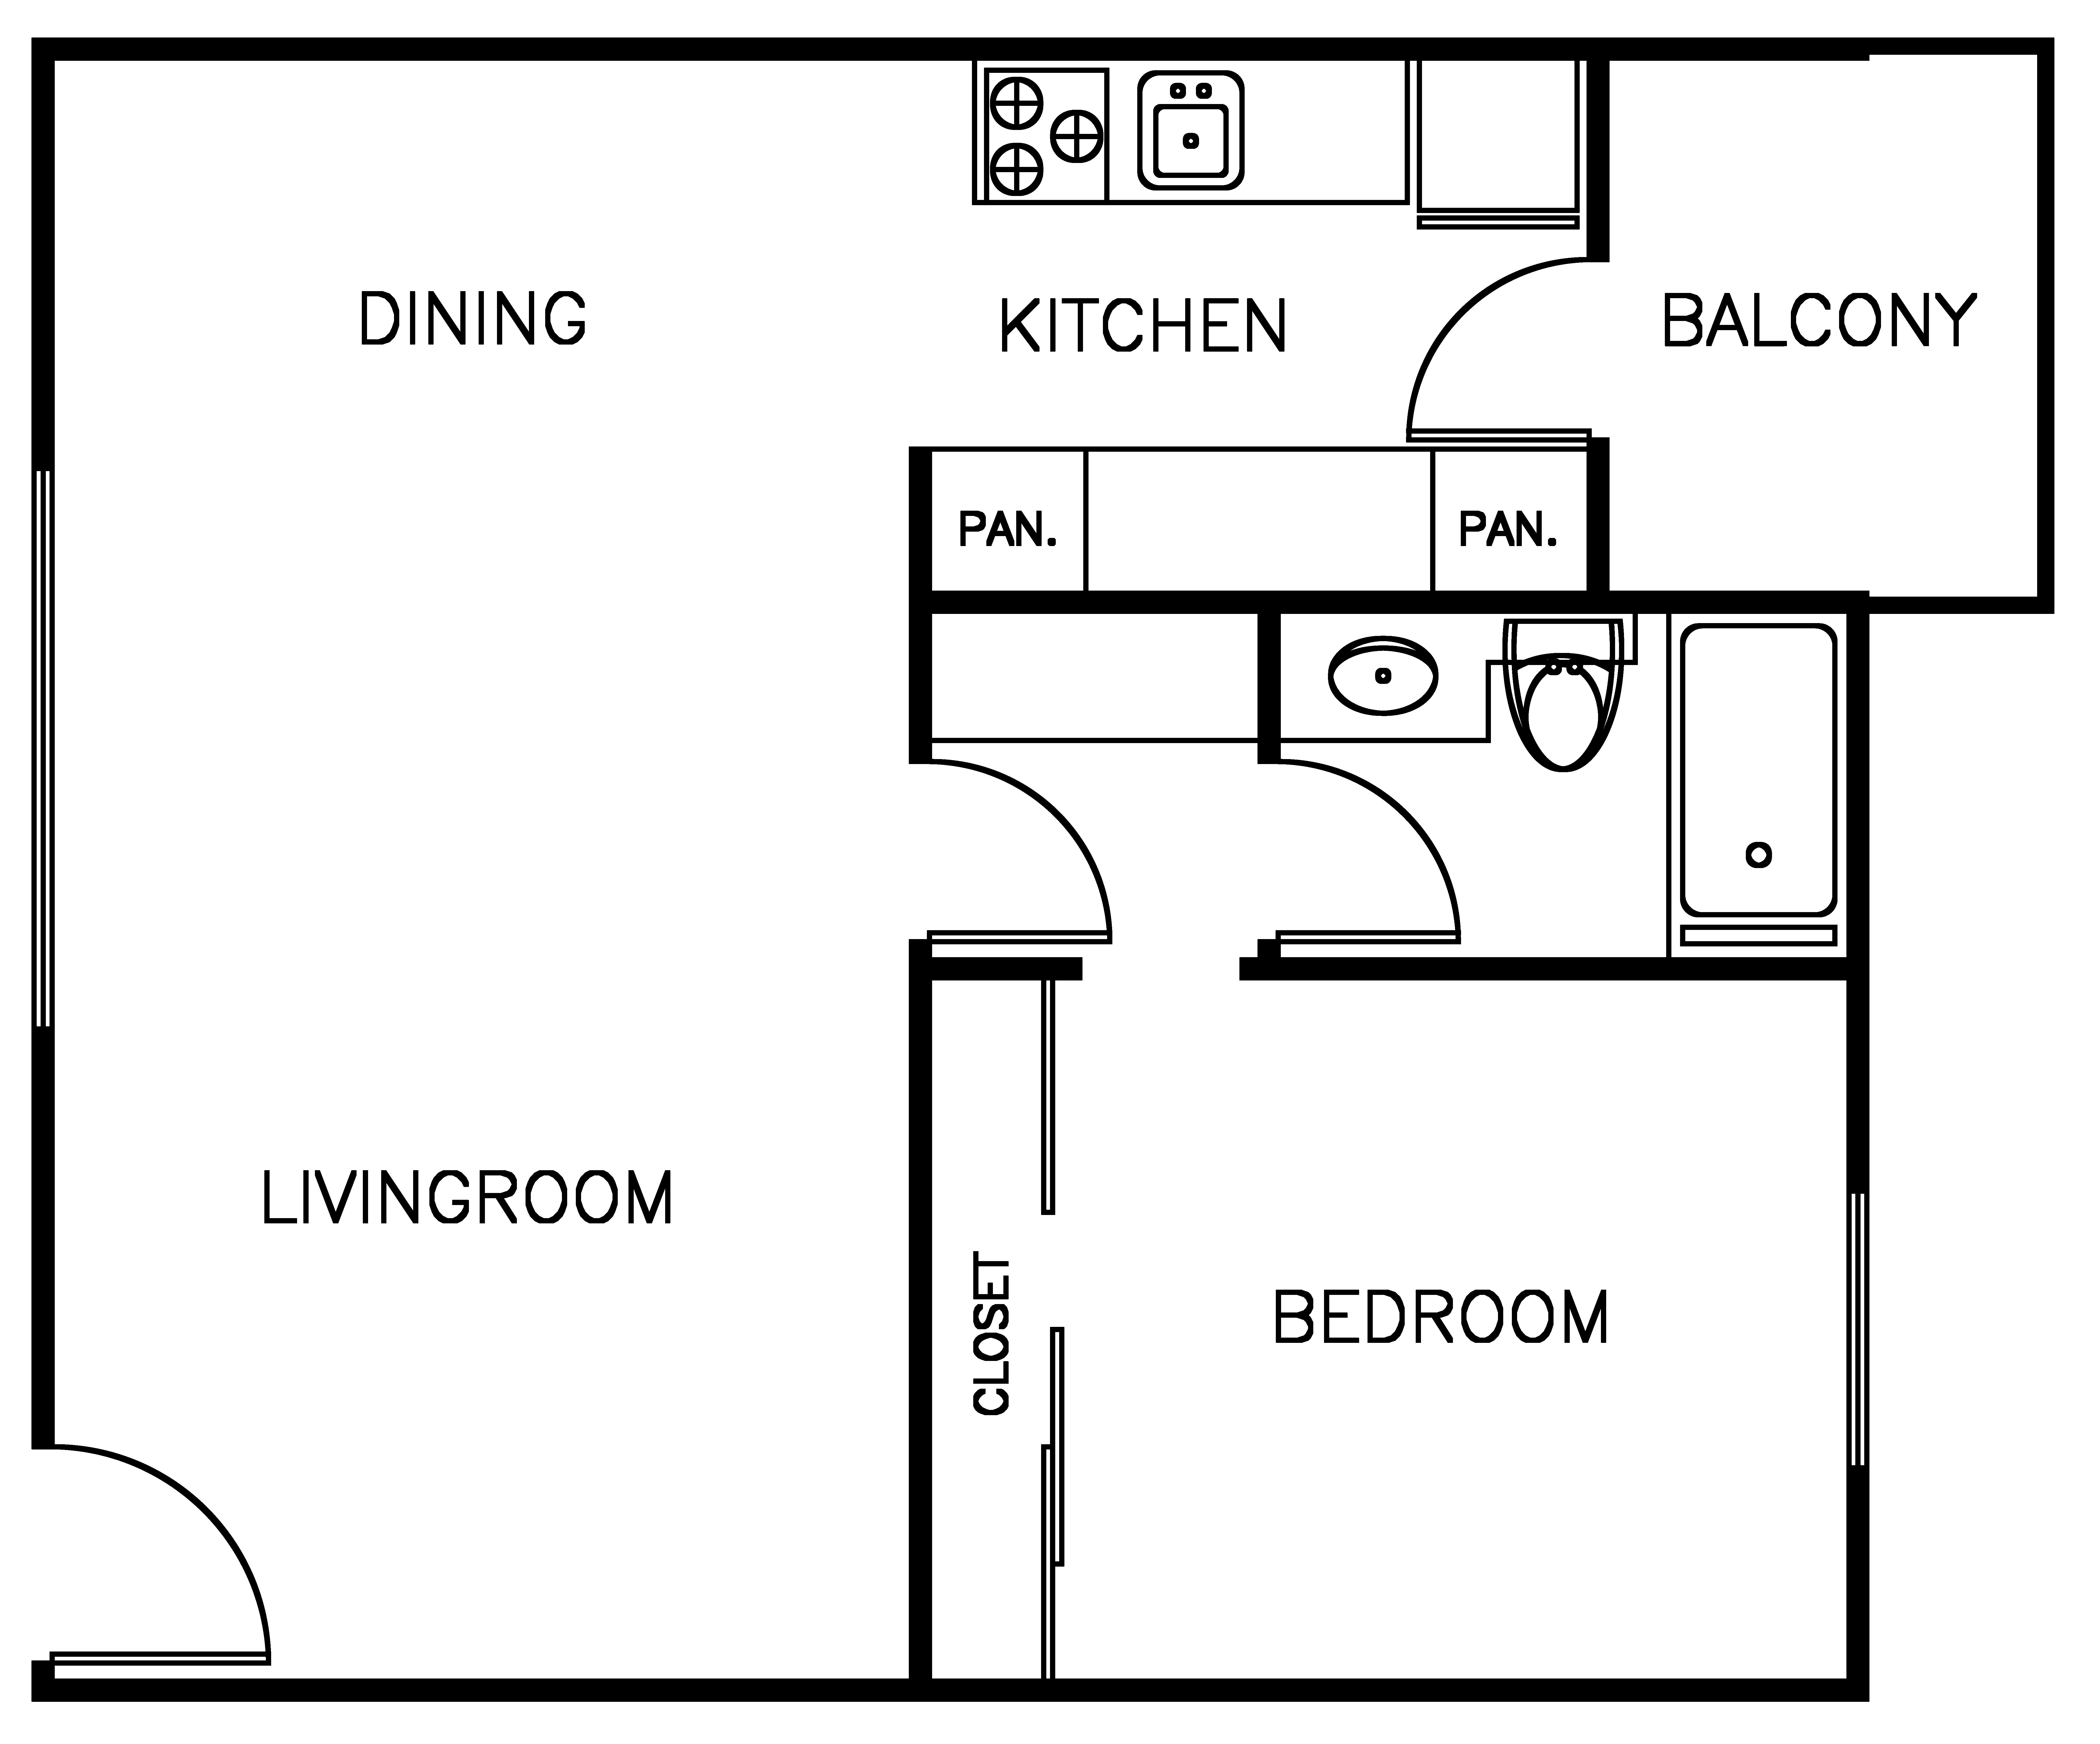 Spacious 1 bedroom floor plan layout